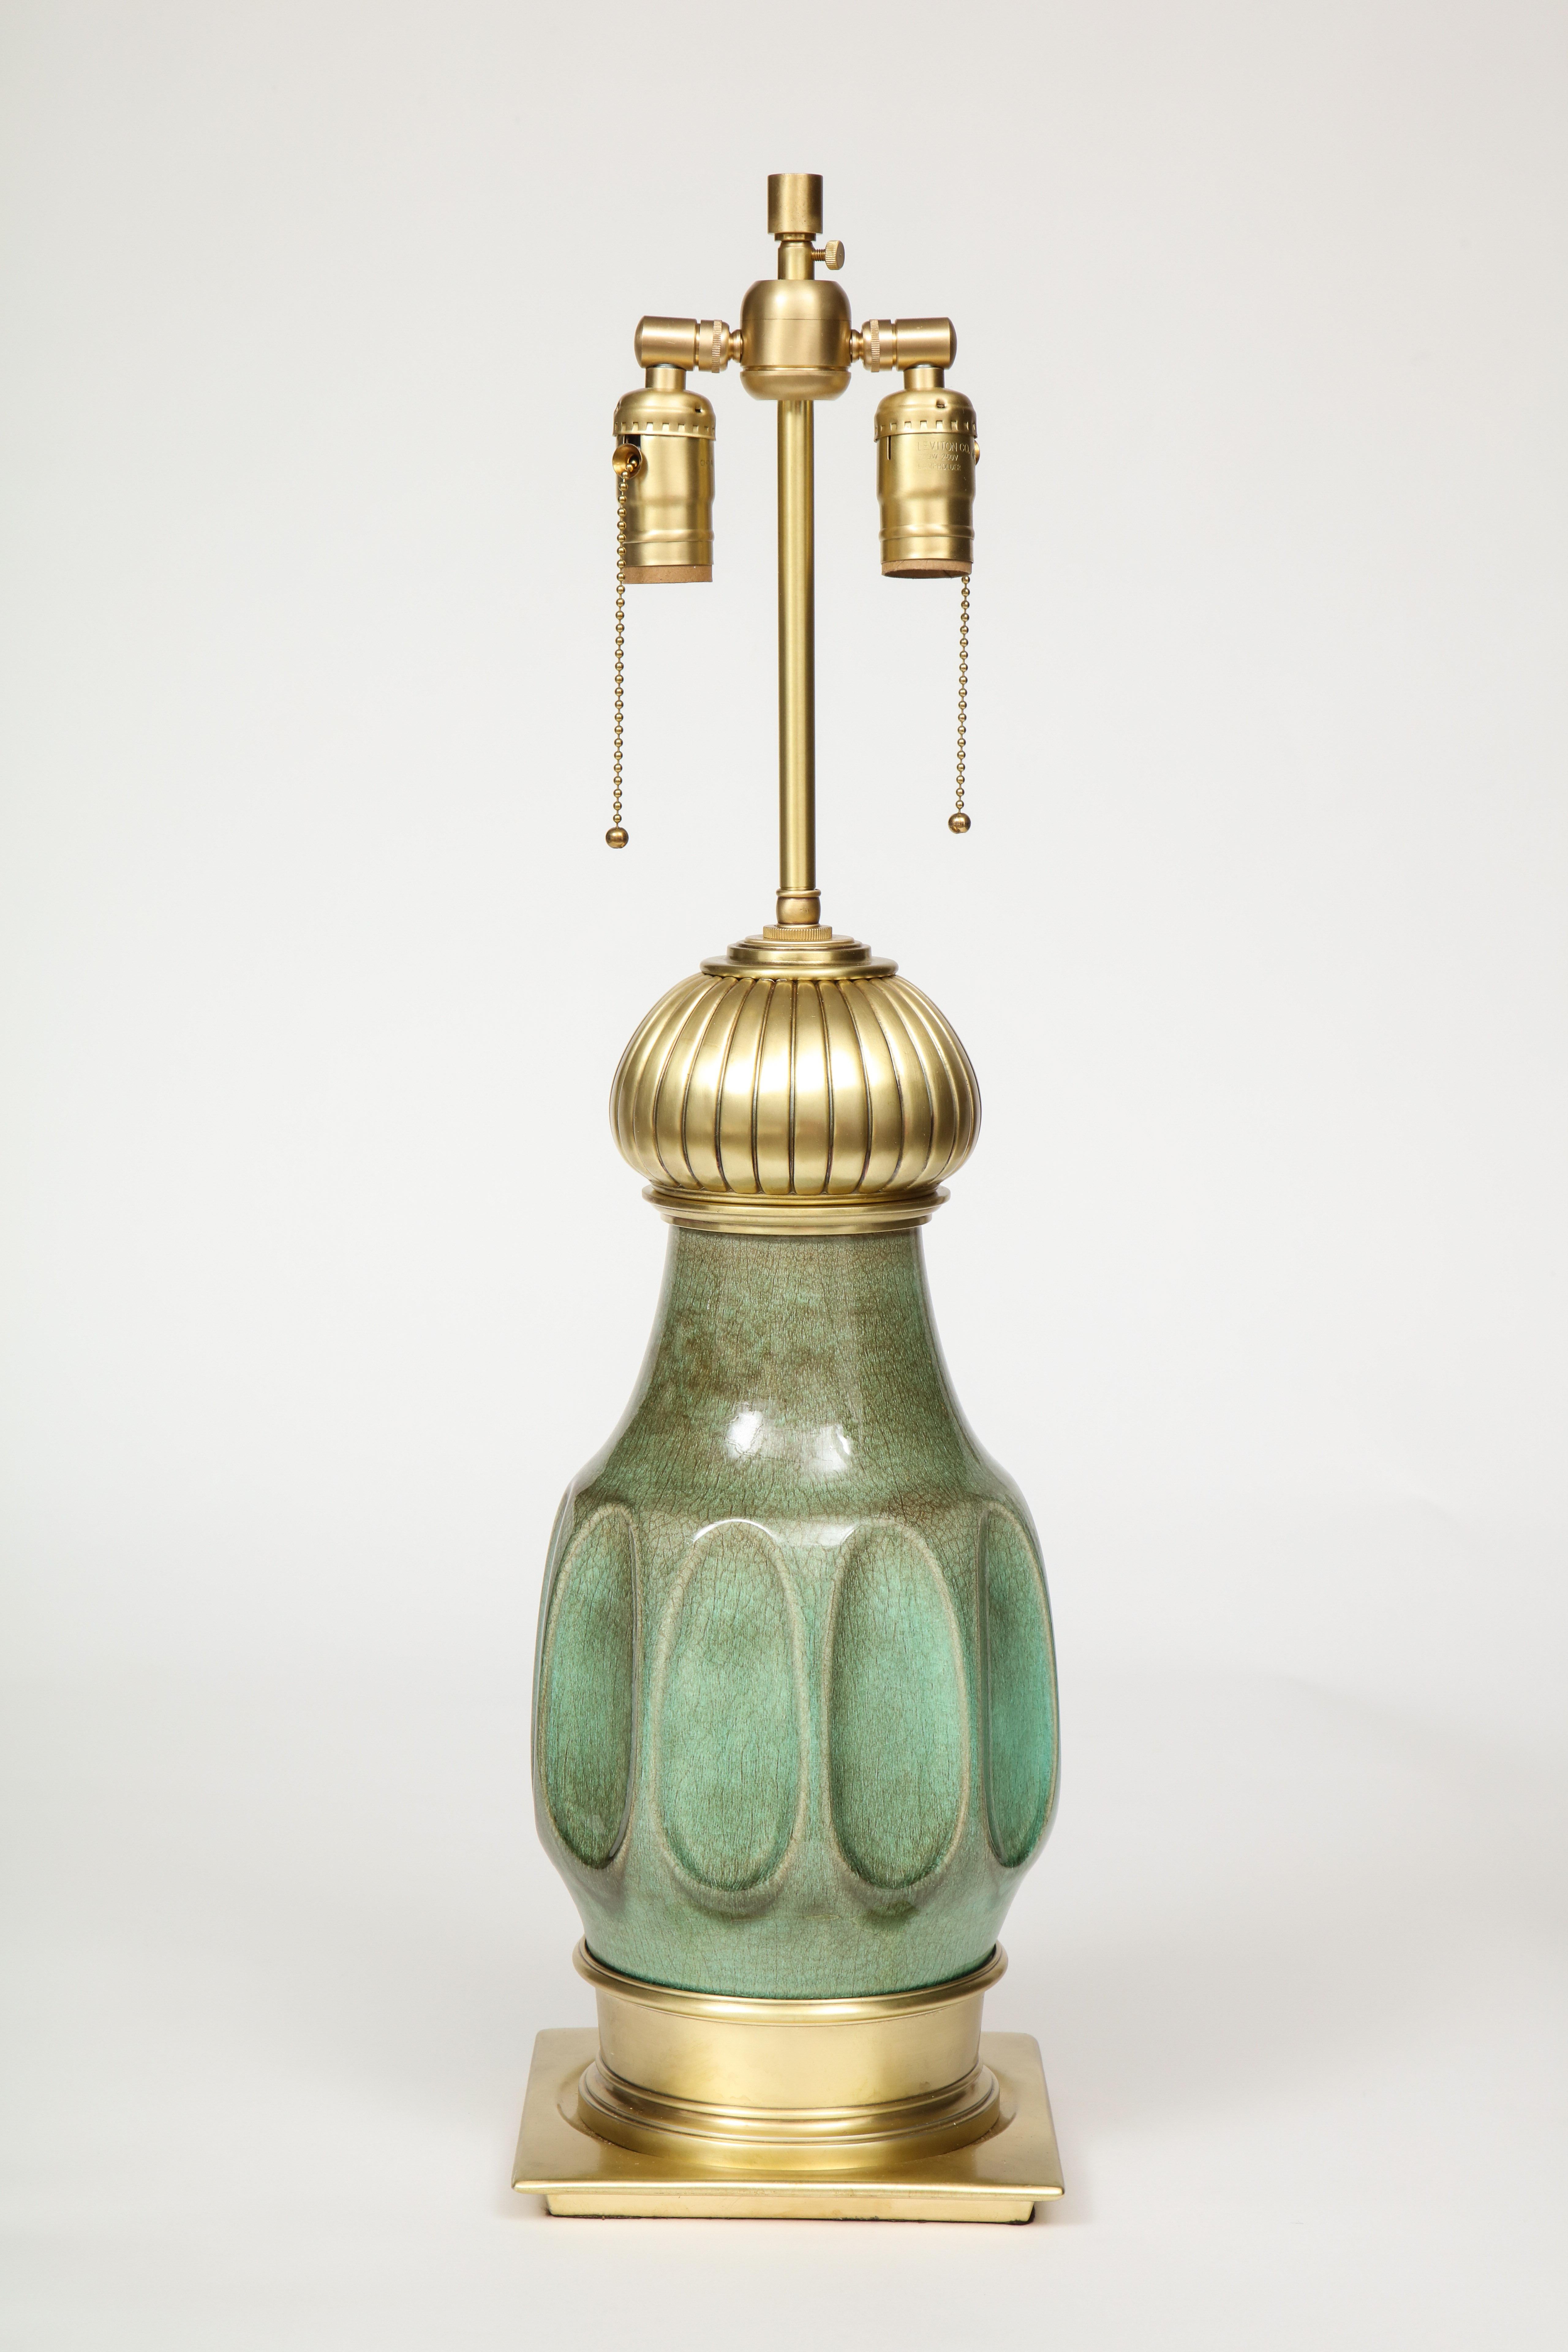 Paire de lampes en porcelaine émaillée vert jade du milieu du siècle, avec quincaillerie en laiton satiné. Les lampes ont été recâblées pour être utilisées aux États-Unis, les douilles à double faisceau peuvent être ajustées en hauteur, chaque